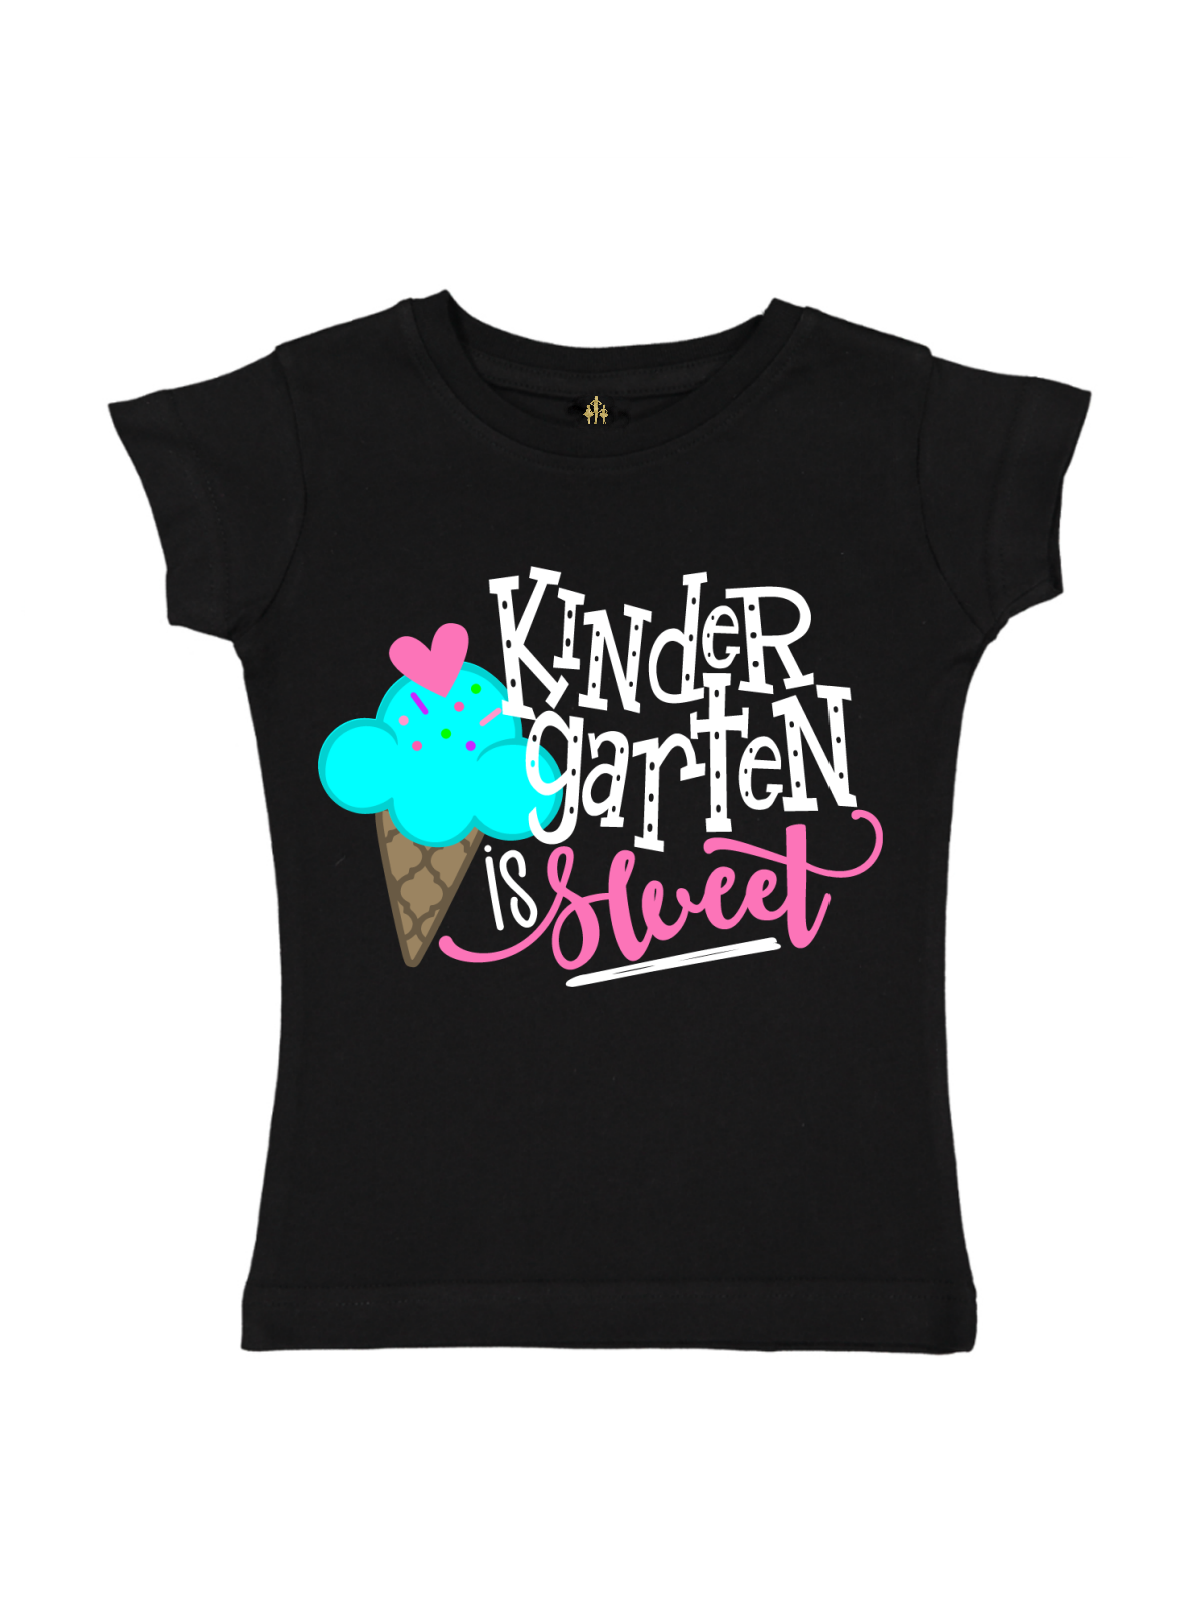 Kindergarten is Sweet Girls Black Shirt